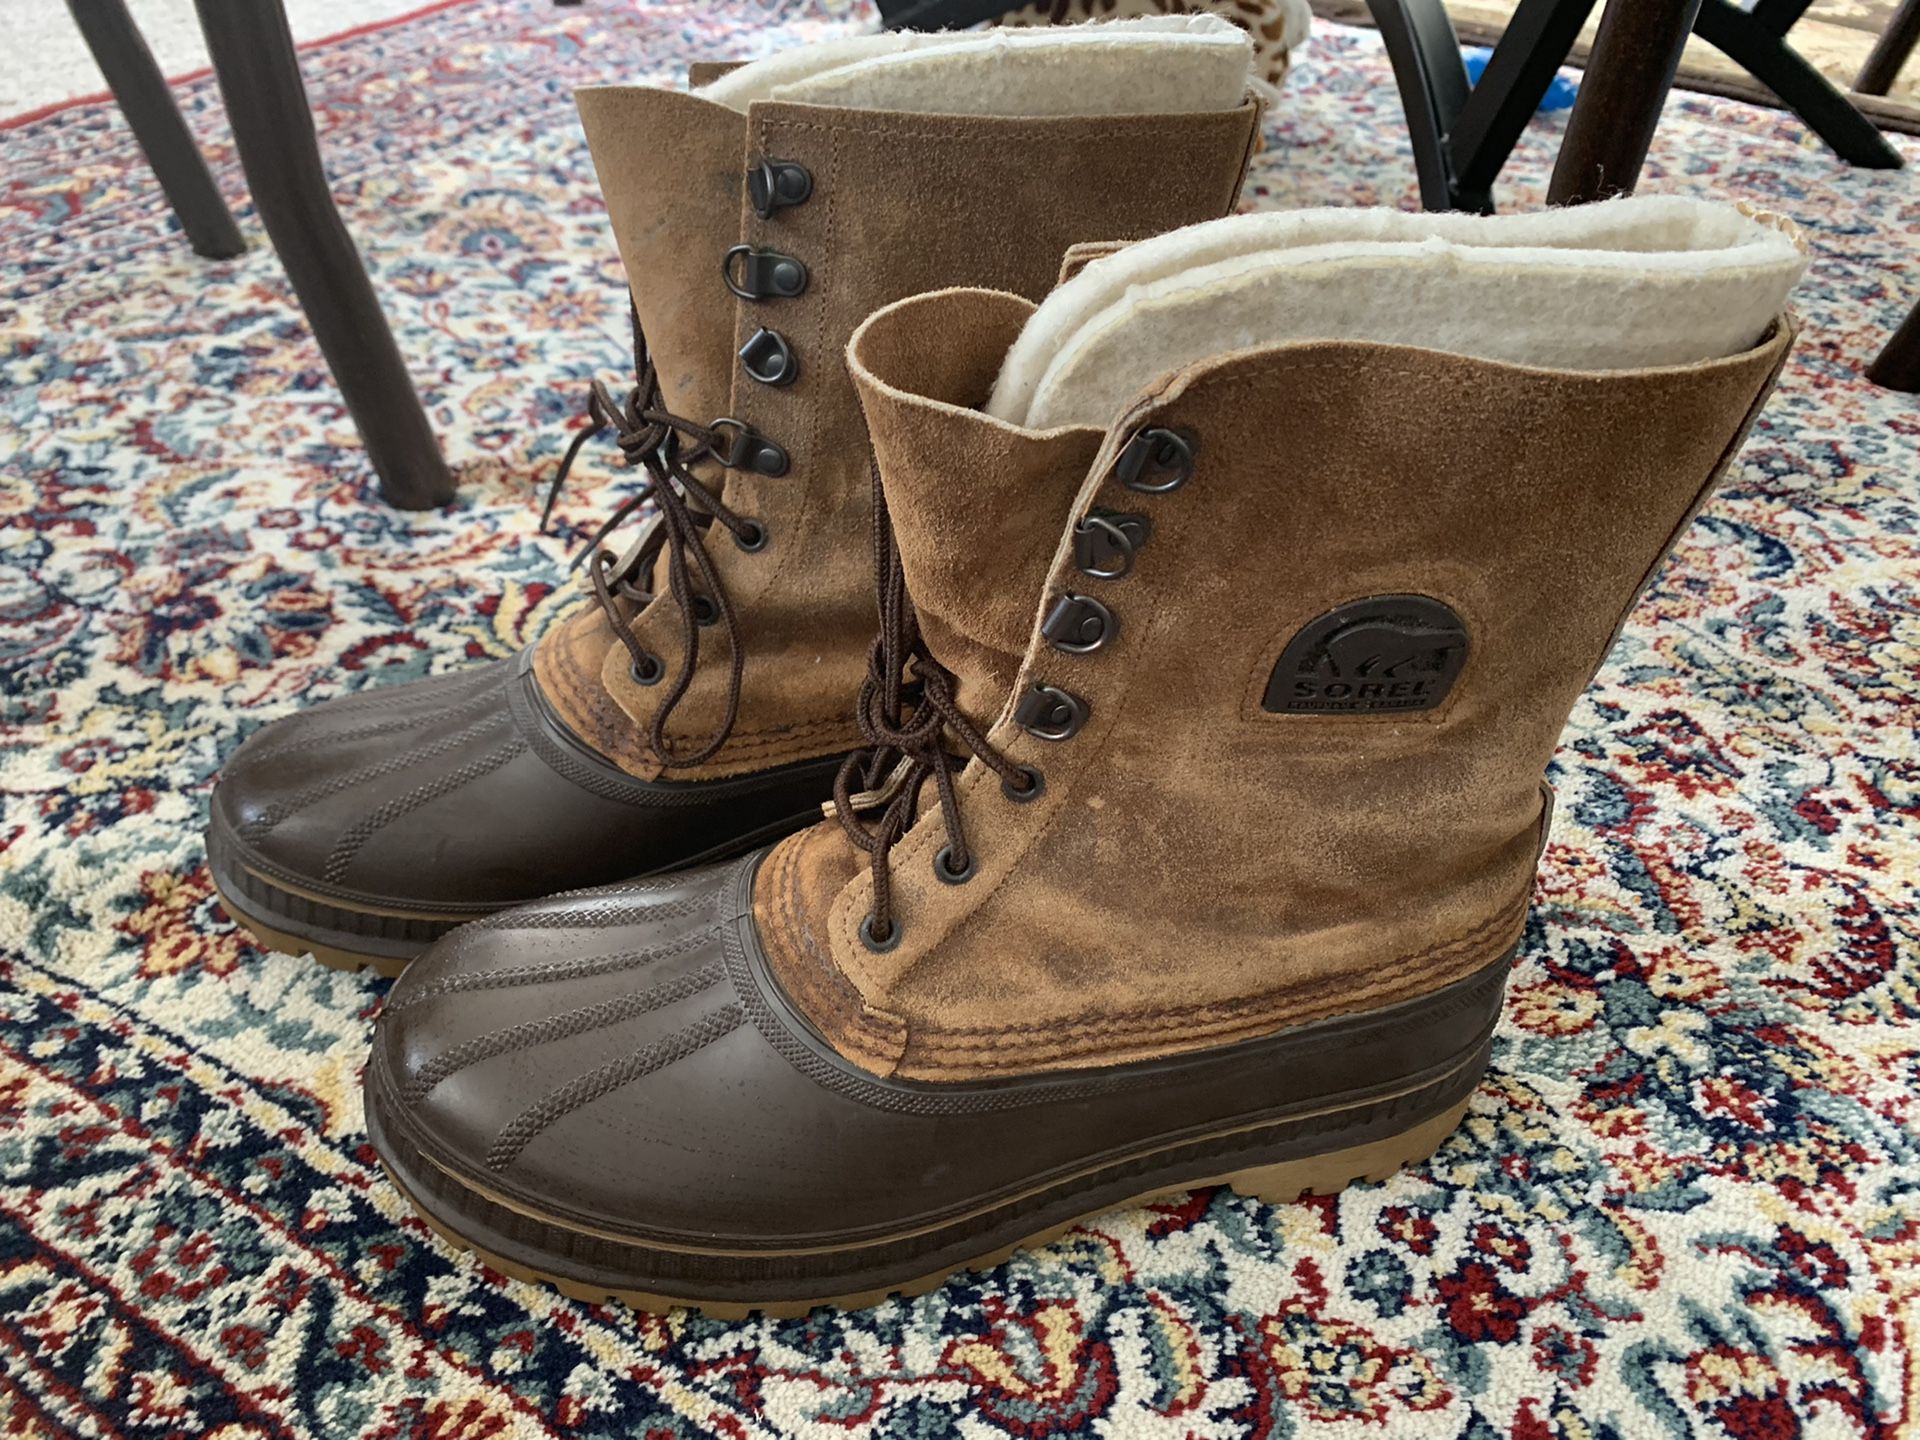 Men’s Sorel snow boots size 9.